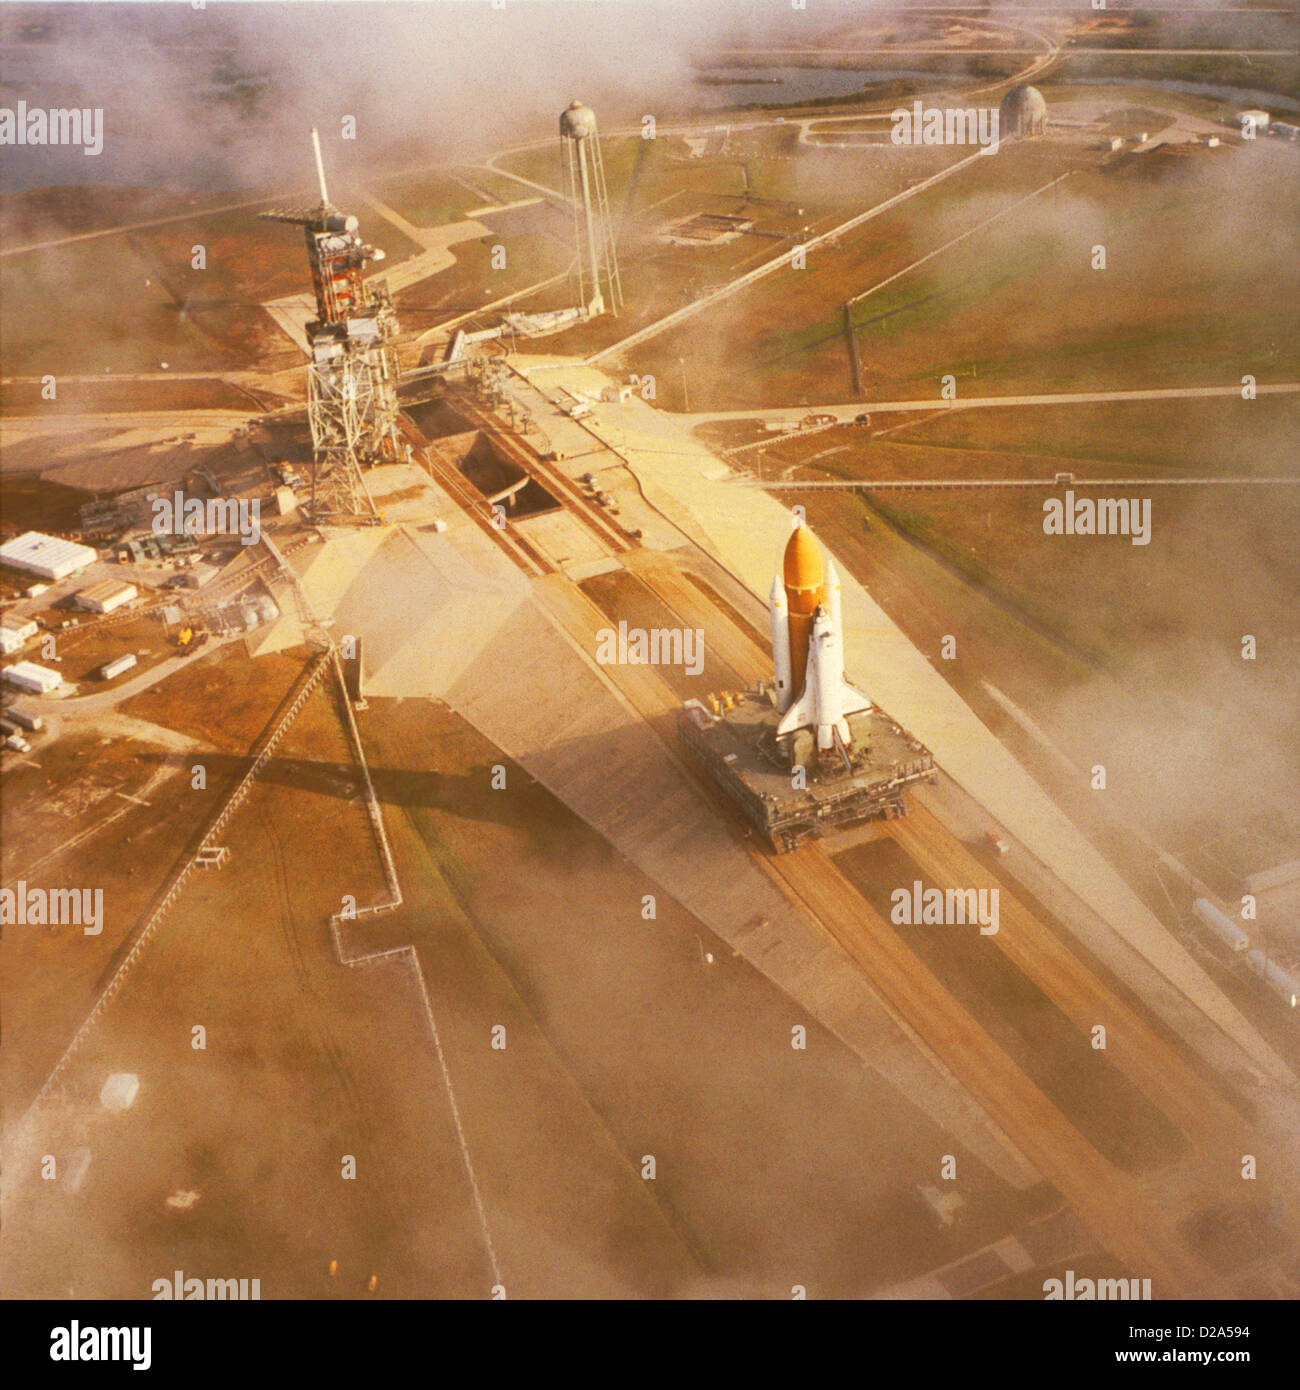 Transbordador Espacial Challenger en Pad 39A, antes del primer vuelo de la NASA (6ª misión del Transbordador), 1/83 Foto de stock